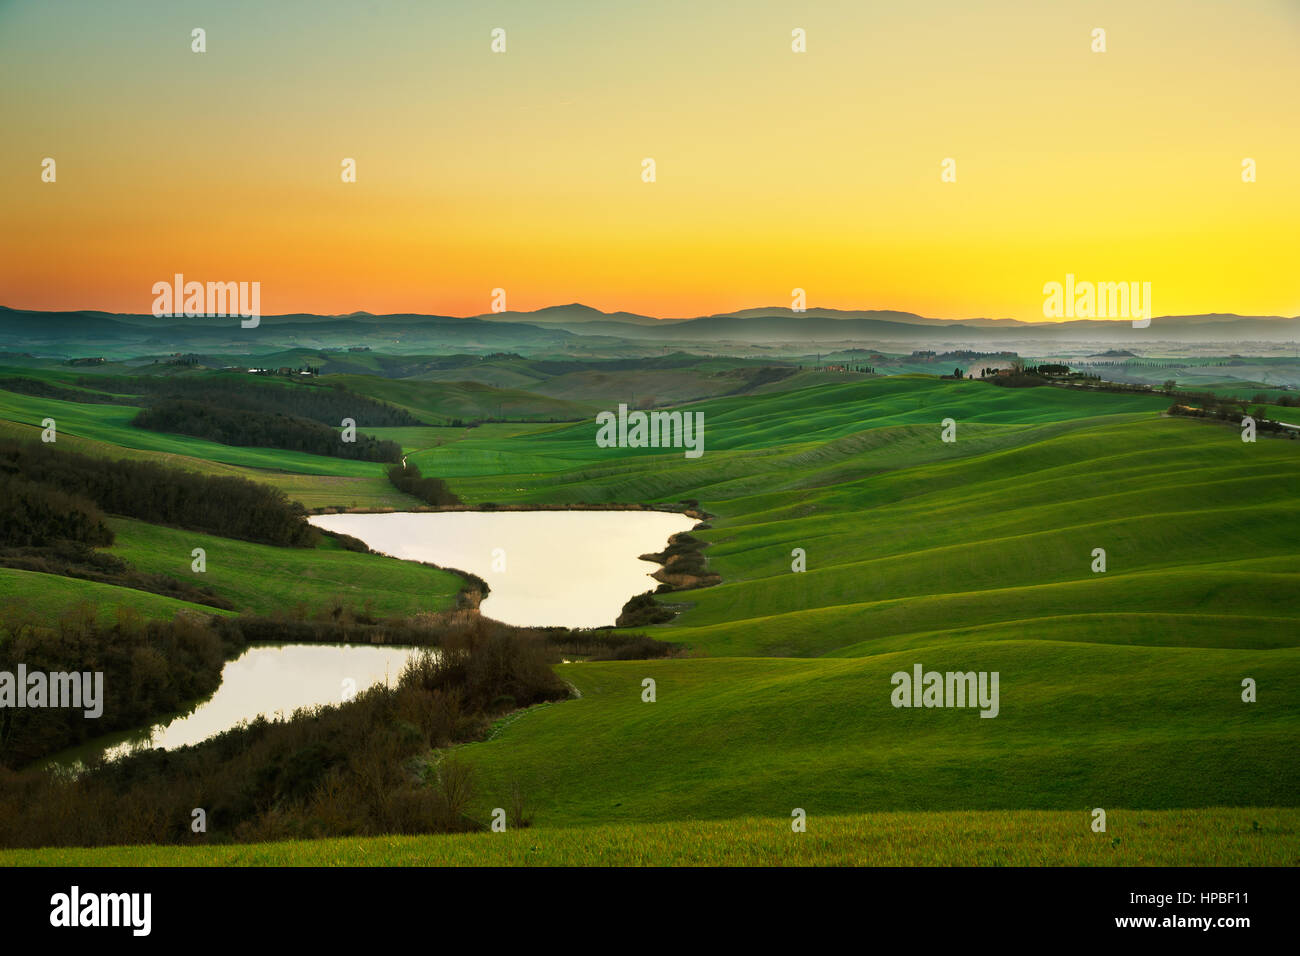 La toscane, paysage des crete senesi près de Siena, Italie, Europe. Petit lac, vert et jaune des champs, ciel bleu avec des nuages. Banque D'Images